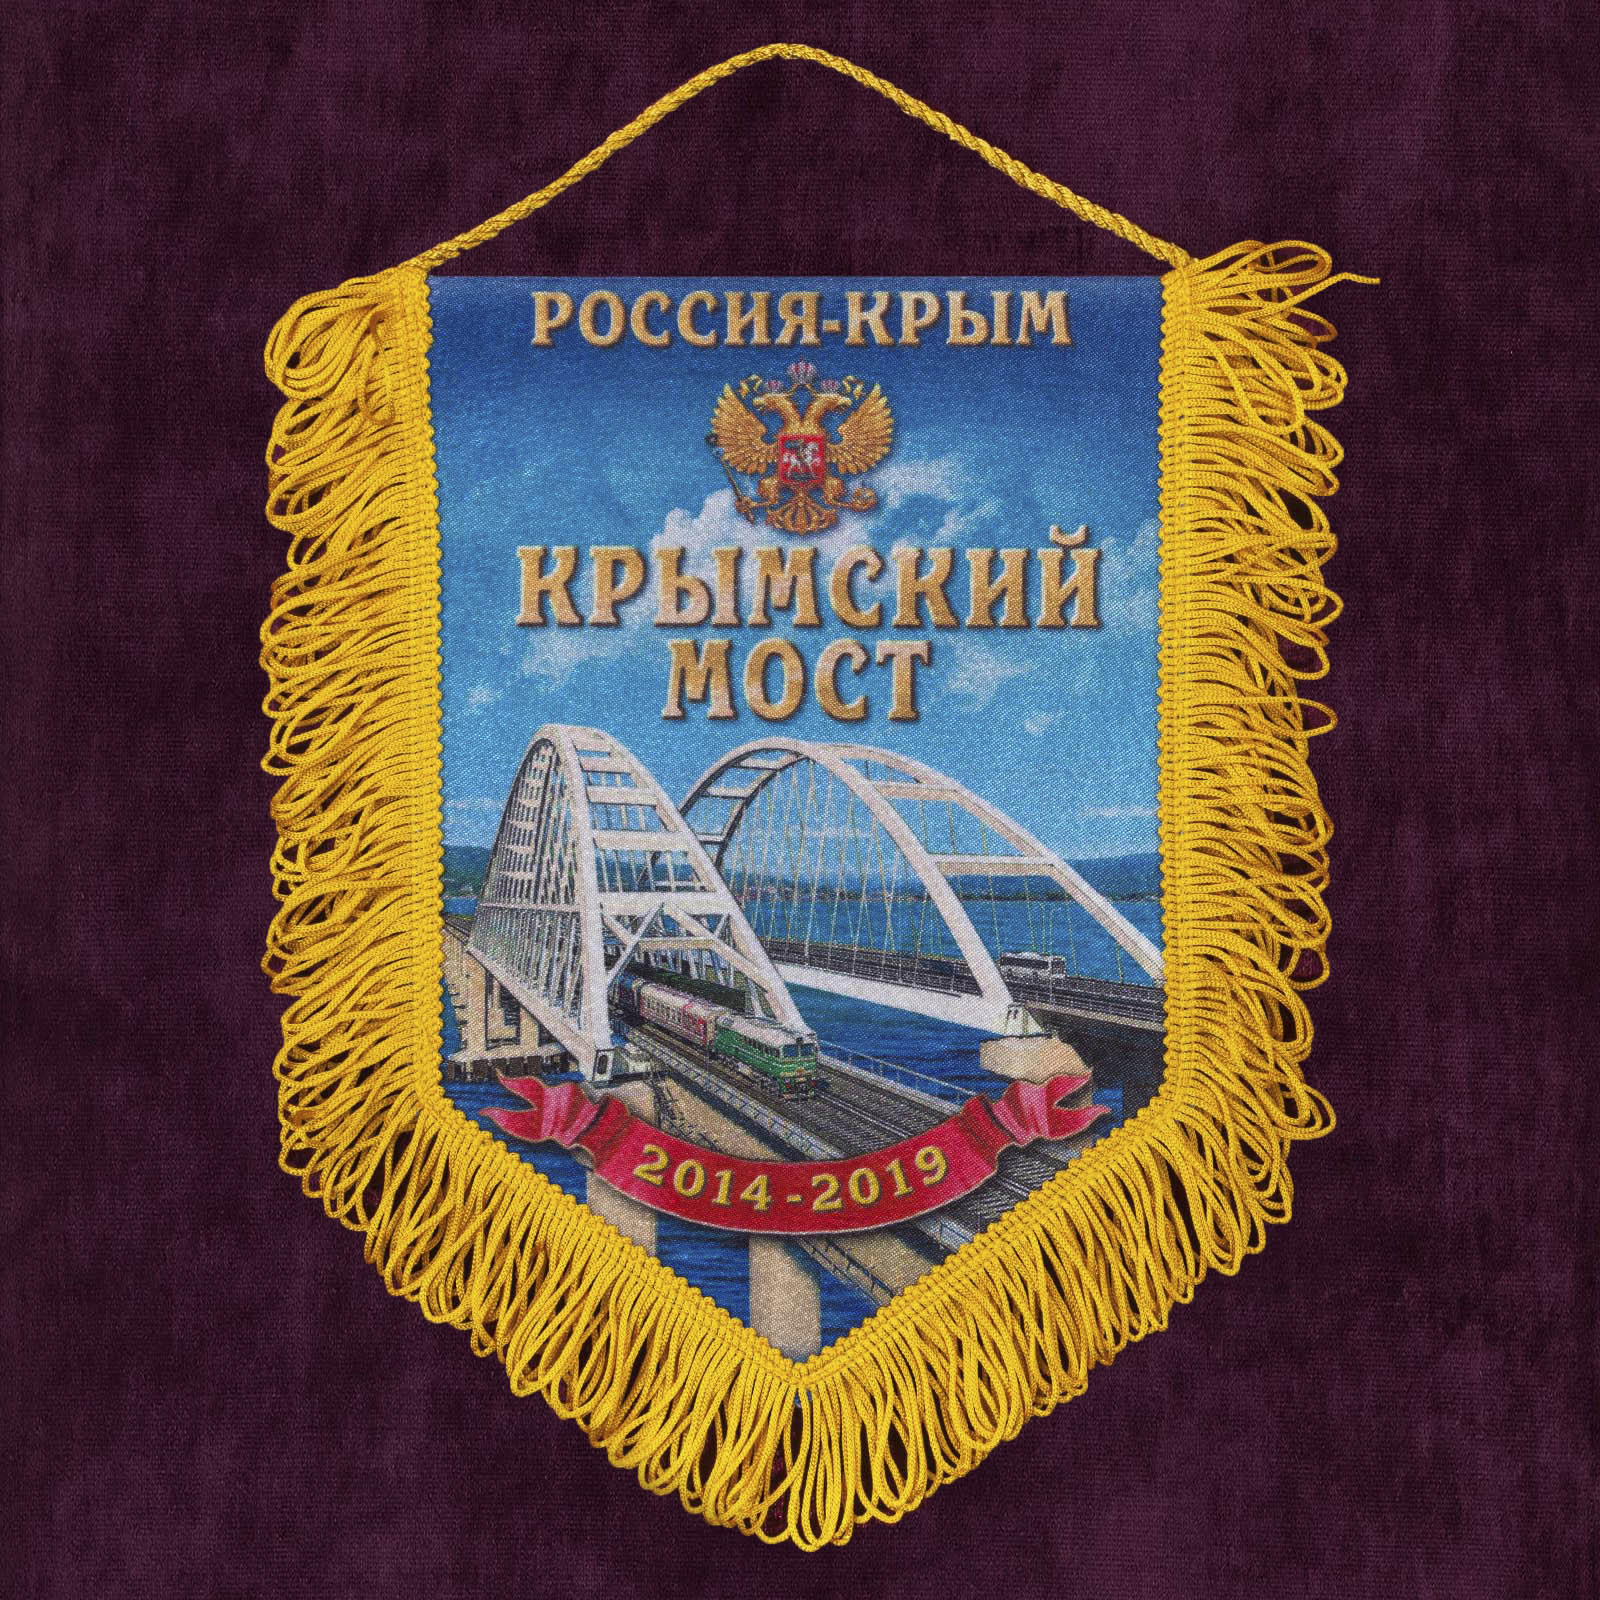 Купить патриотичный вымпел "Крымский мост" недорого